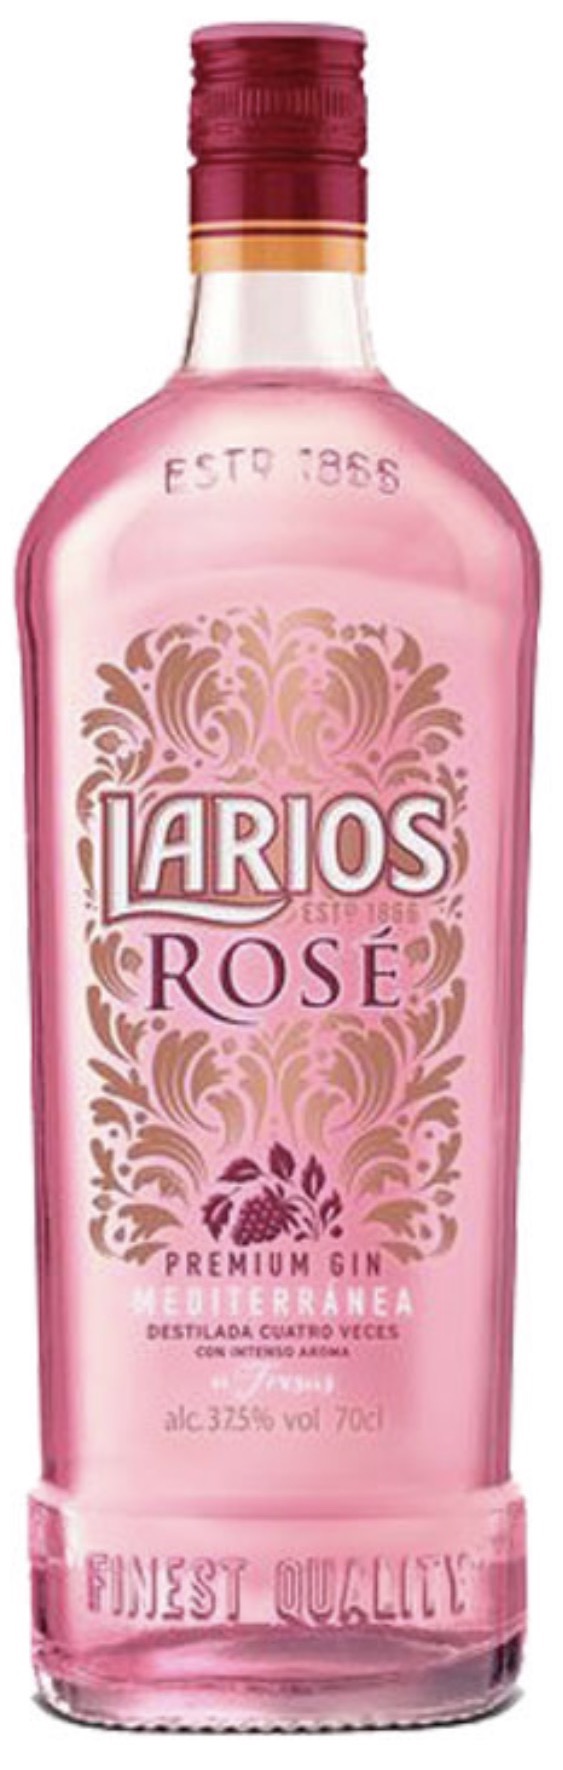 Larios Rosé Gin 37,5% vol. 0,7L